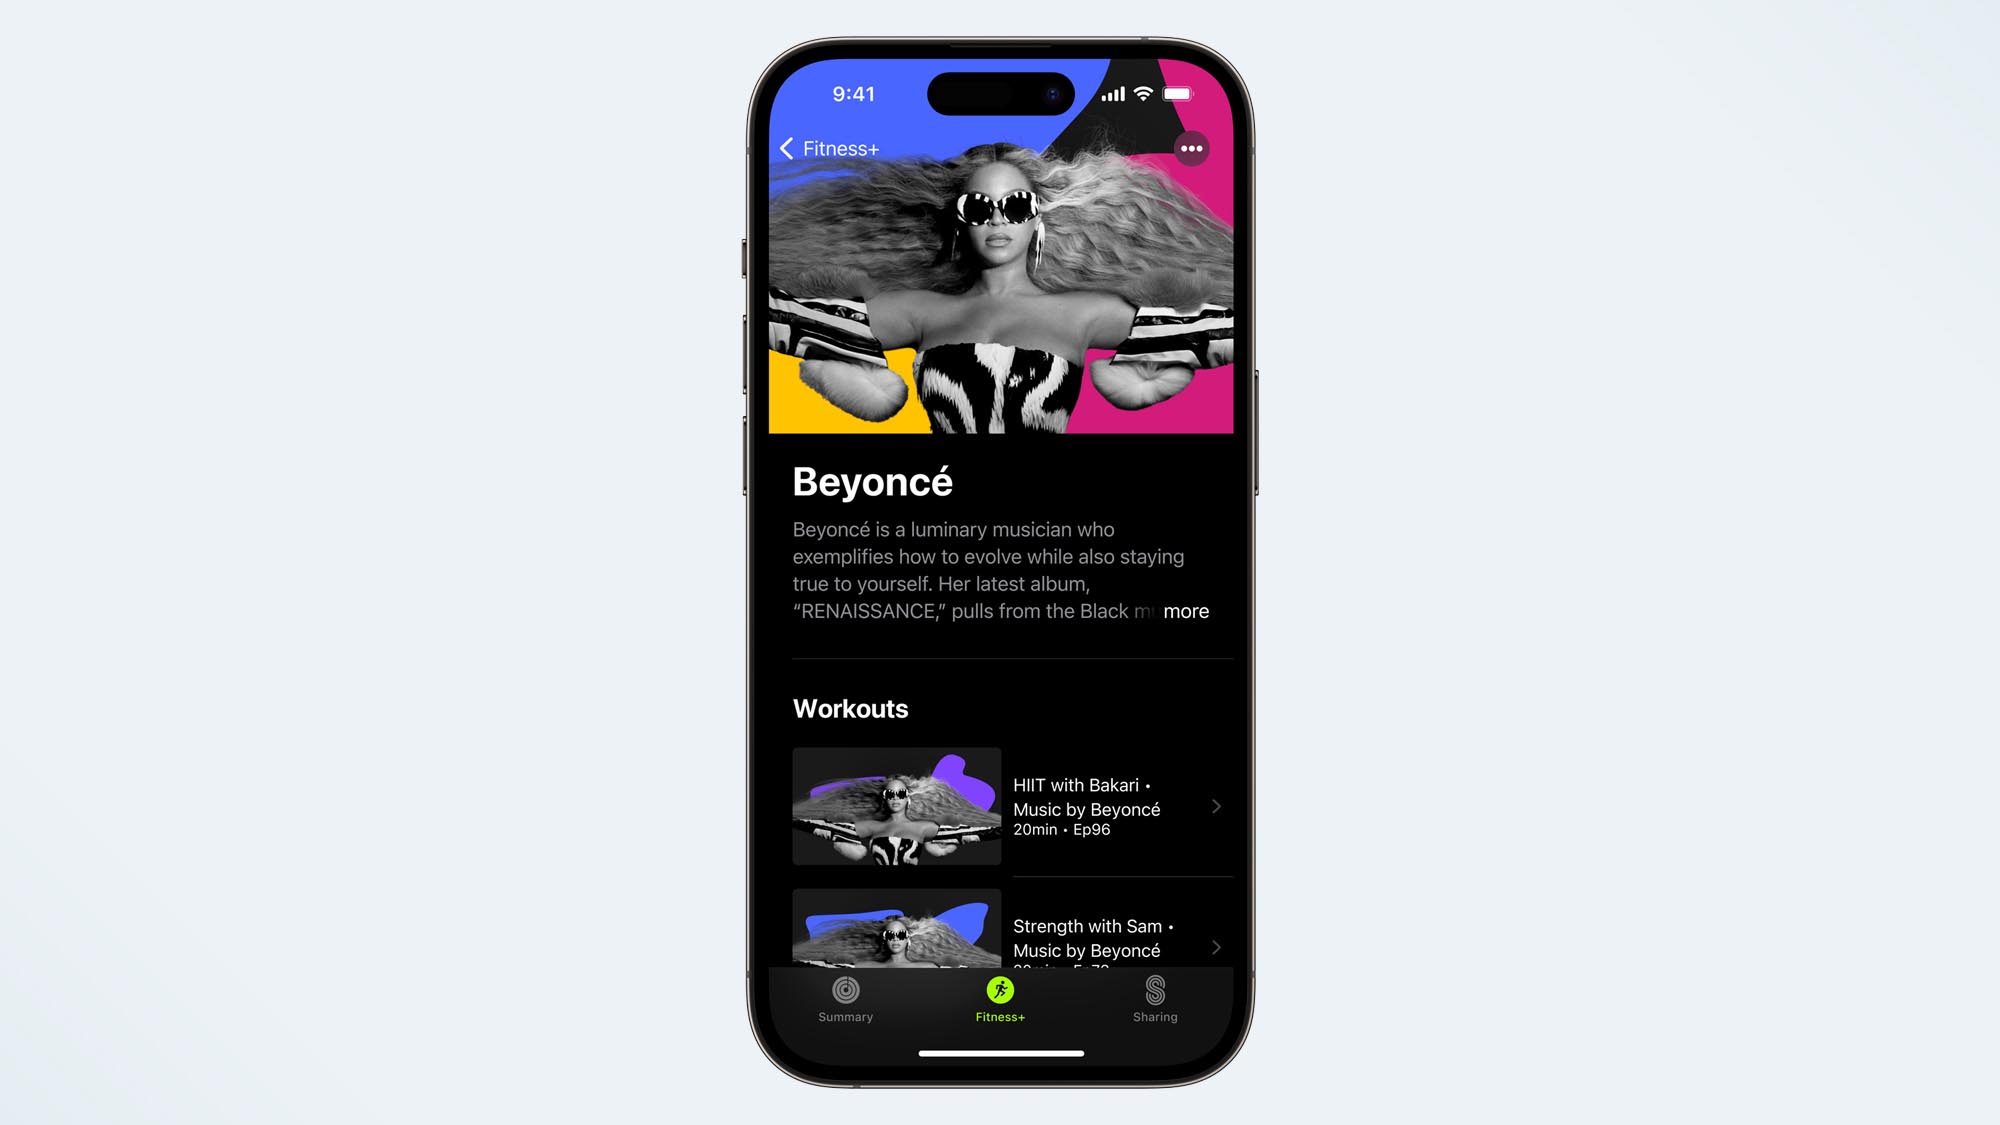 una foto del foco de Beyoncé en la plataforma Apple Fitness Plus